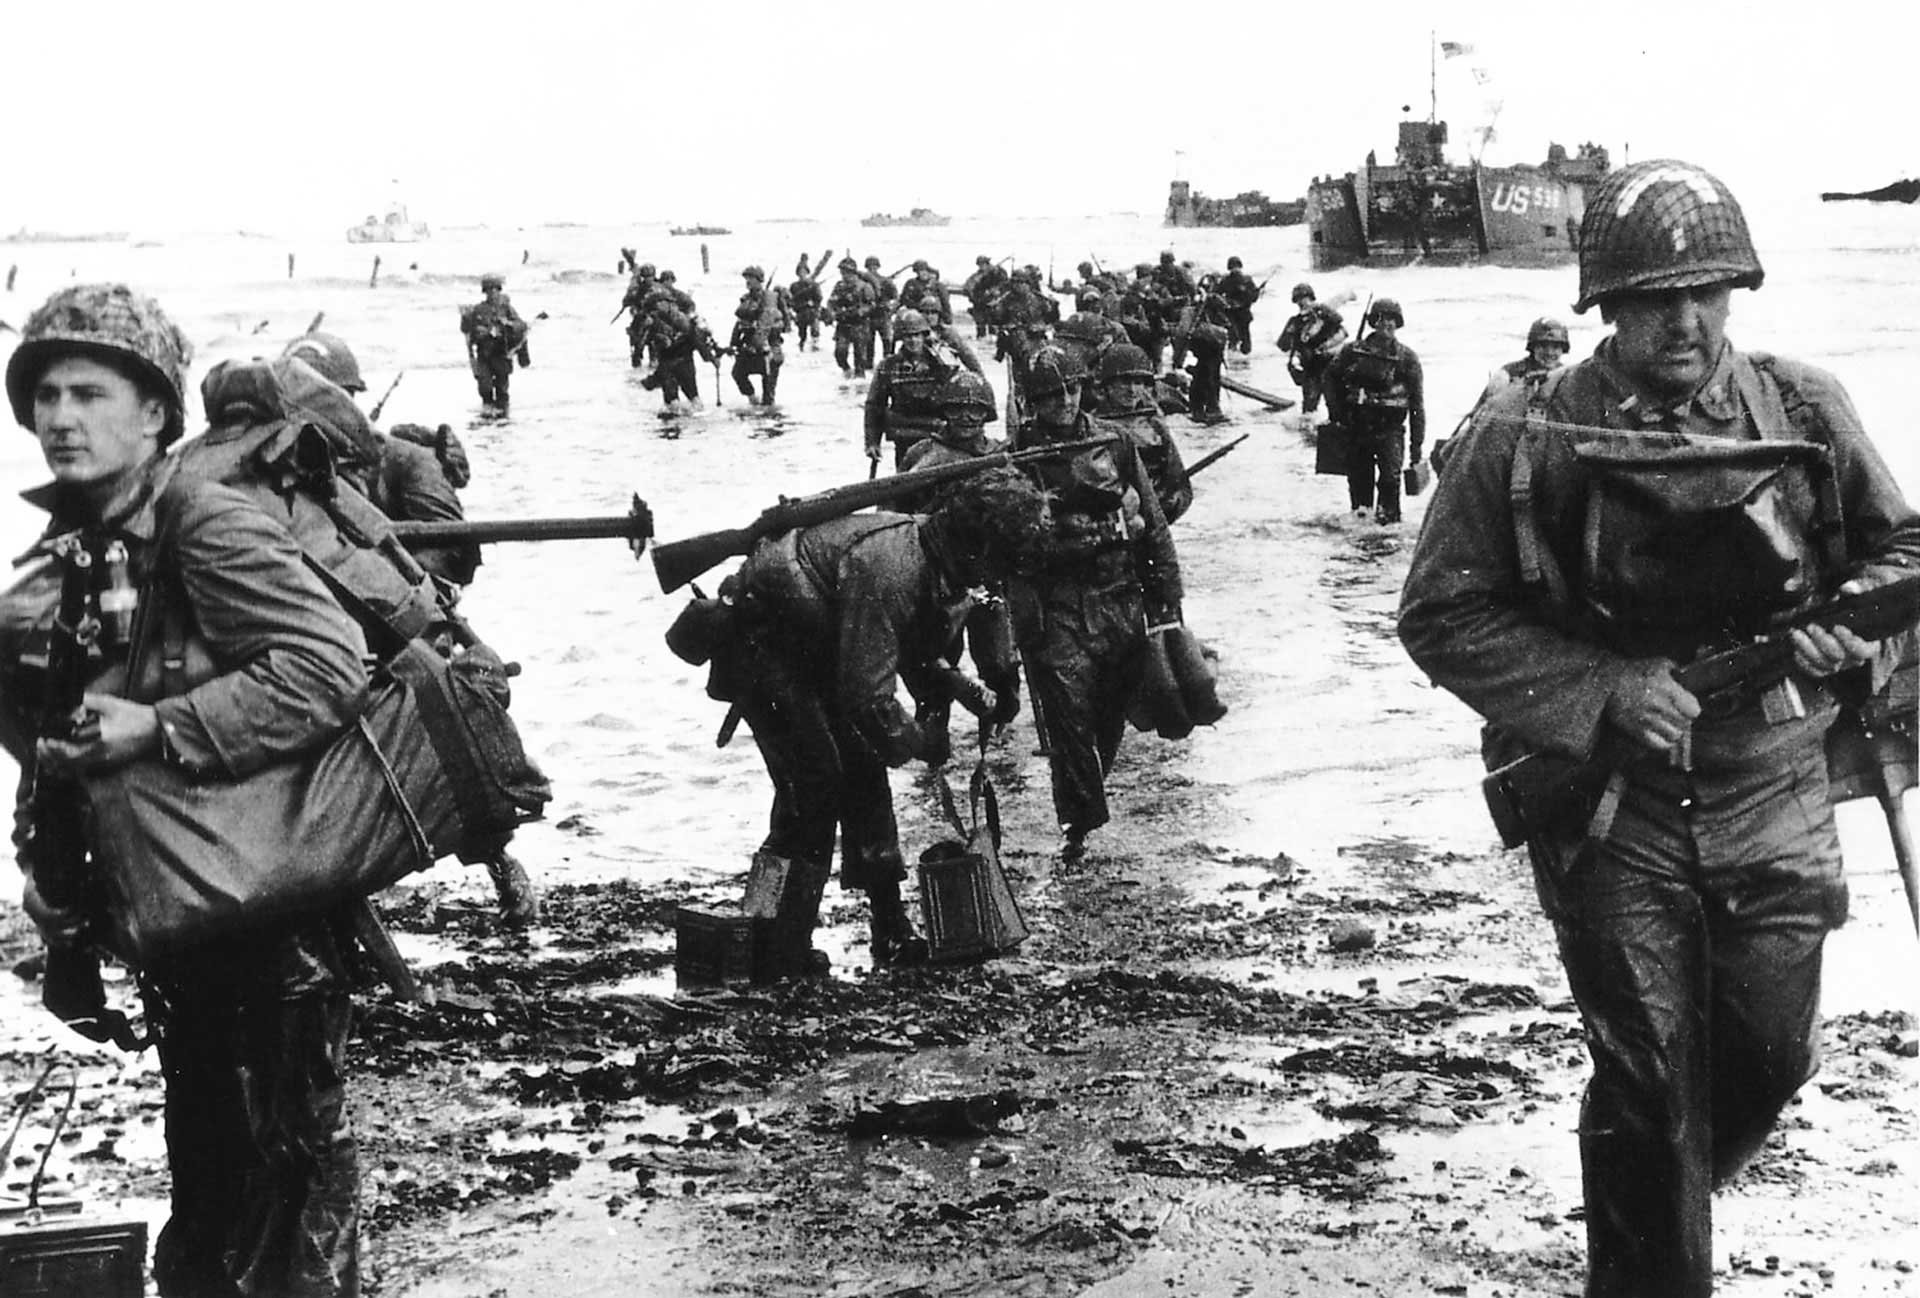 US troops Omaha beach RTR3R6QH भारतीय का बह रहा रक्त, लाशों से पट गया था मैदान लेकिन धड़ाके से चलती रही गोलियां, जाने इतिहास